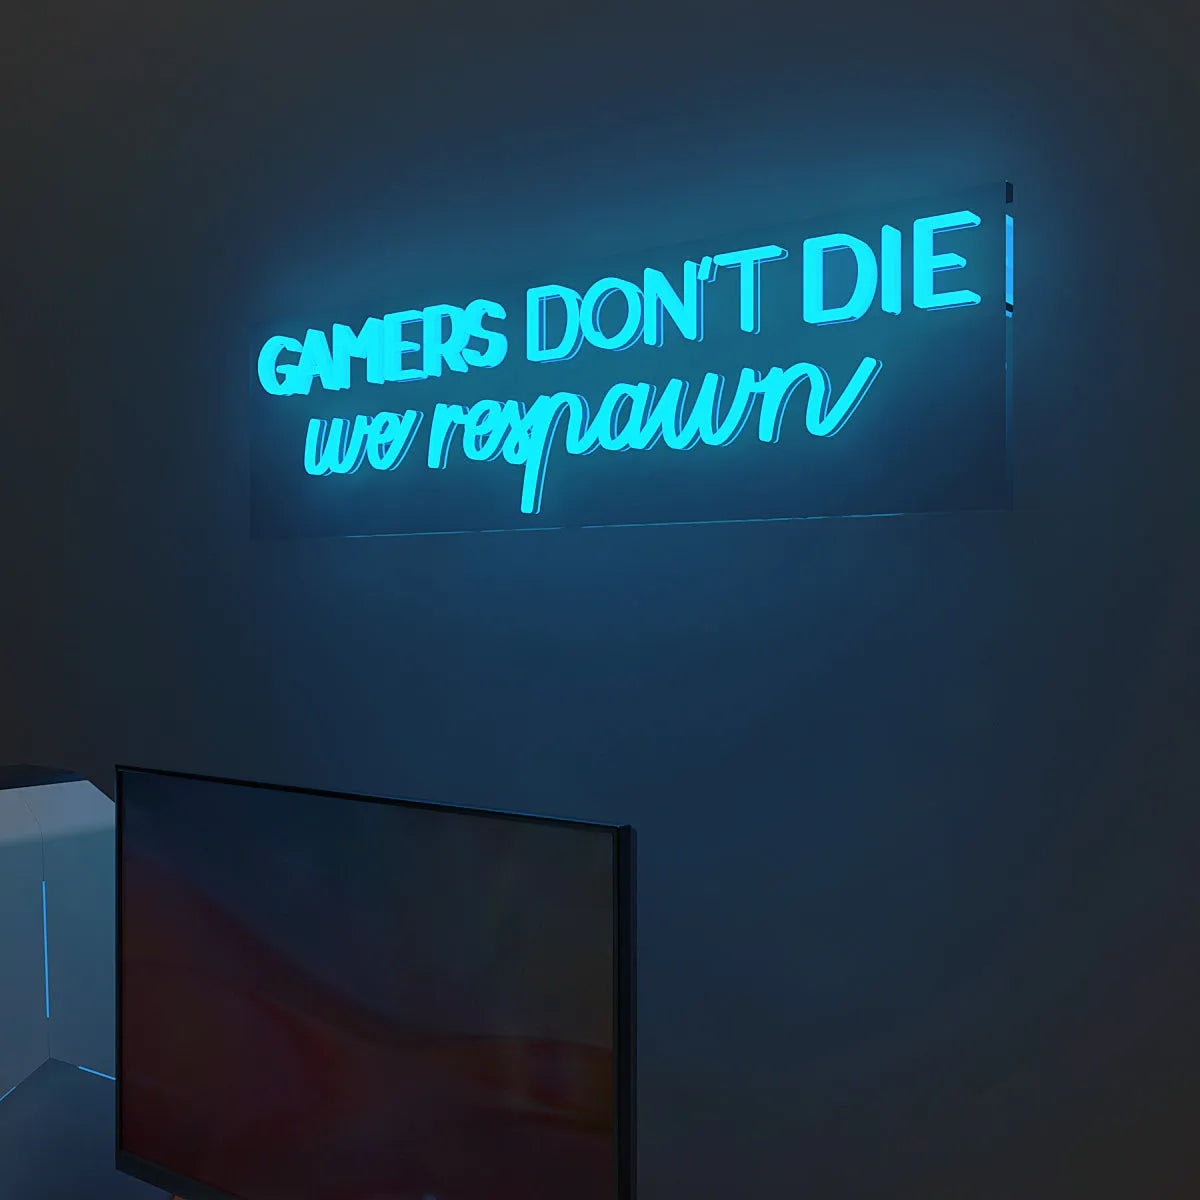 Gamers Don’t Die LED Neon Light